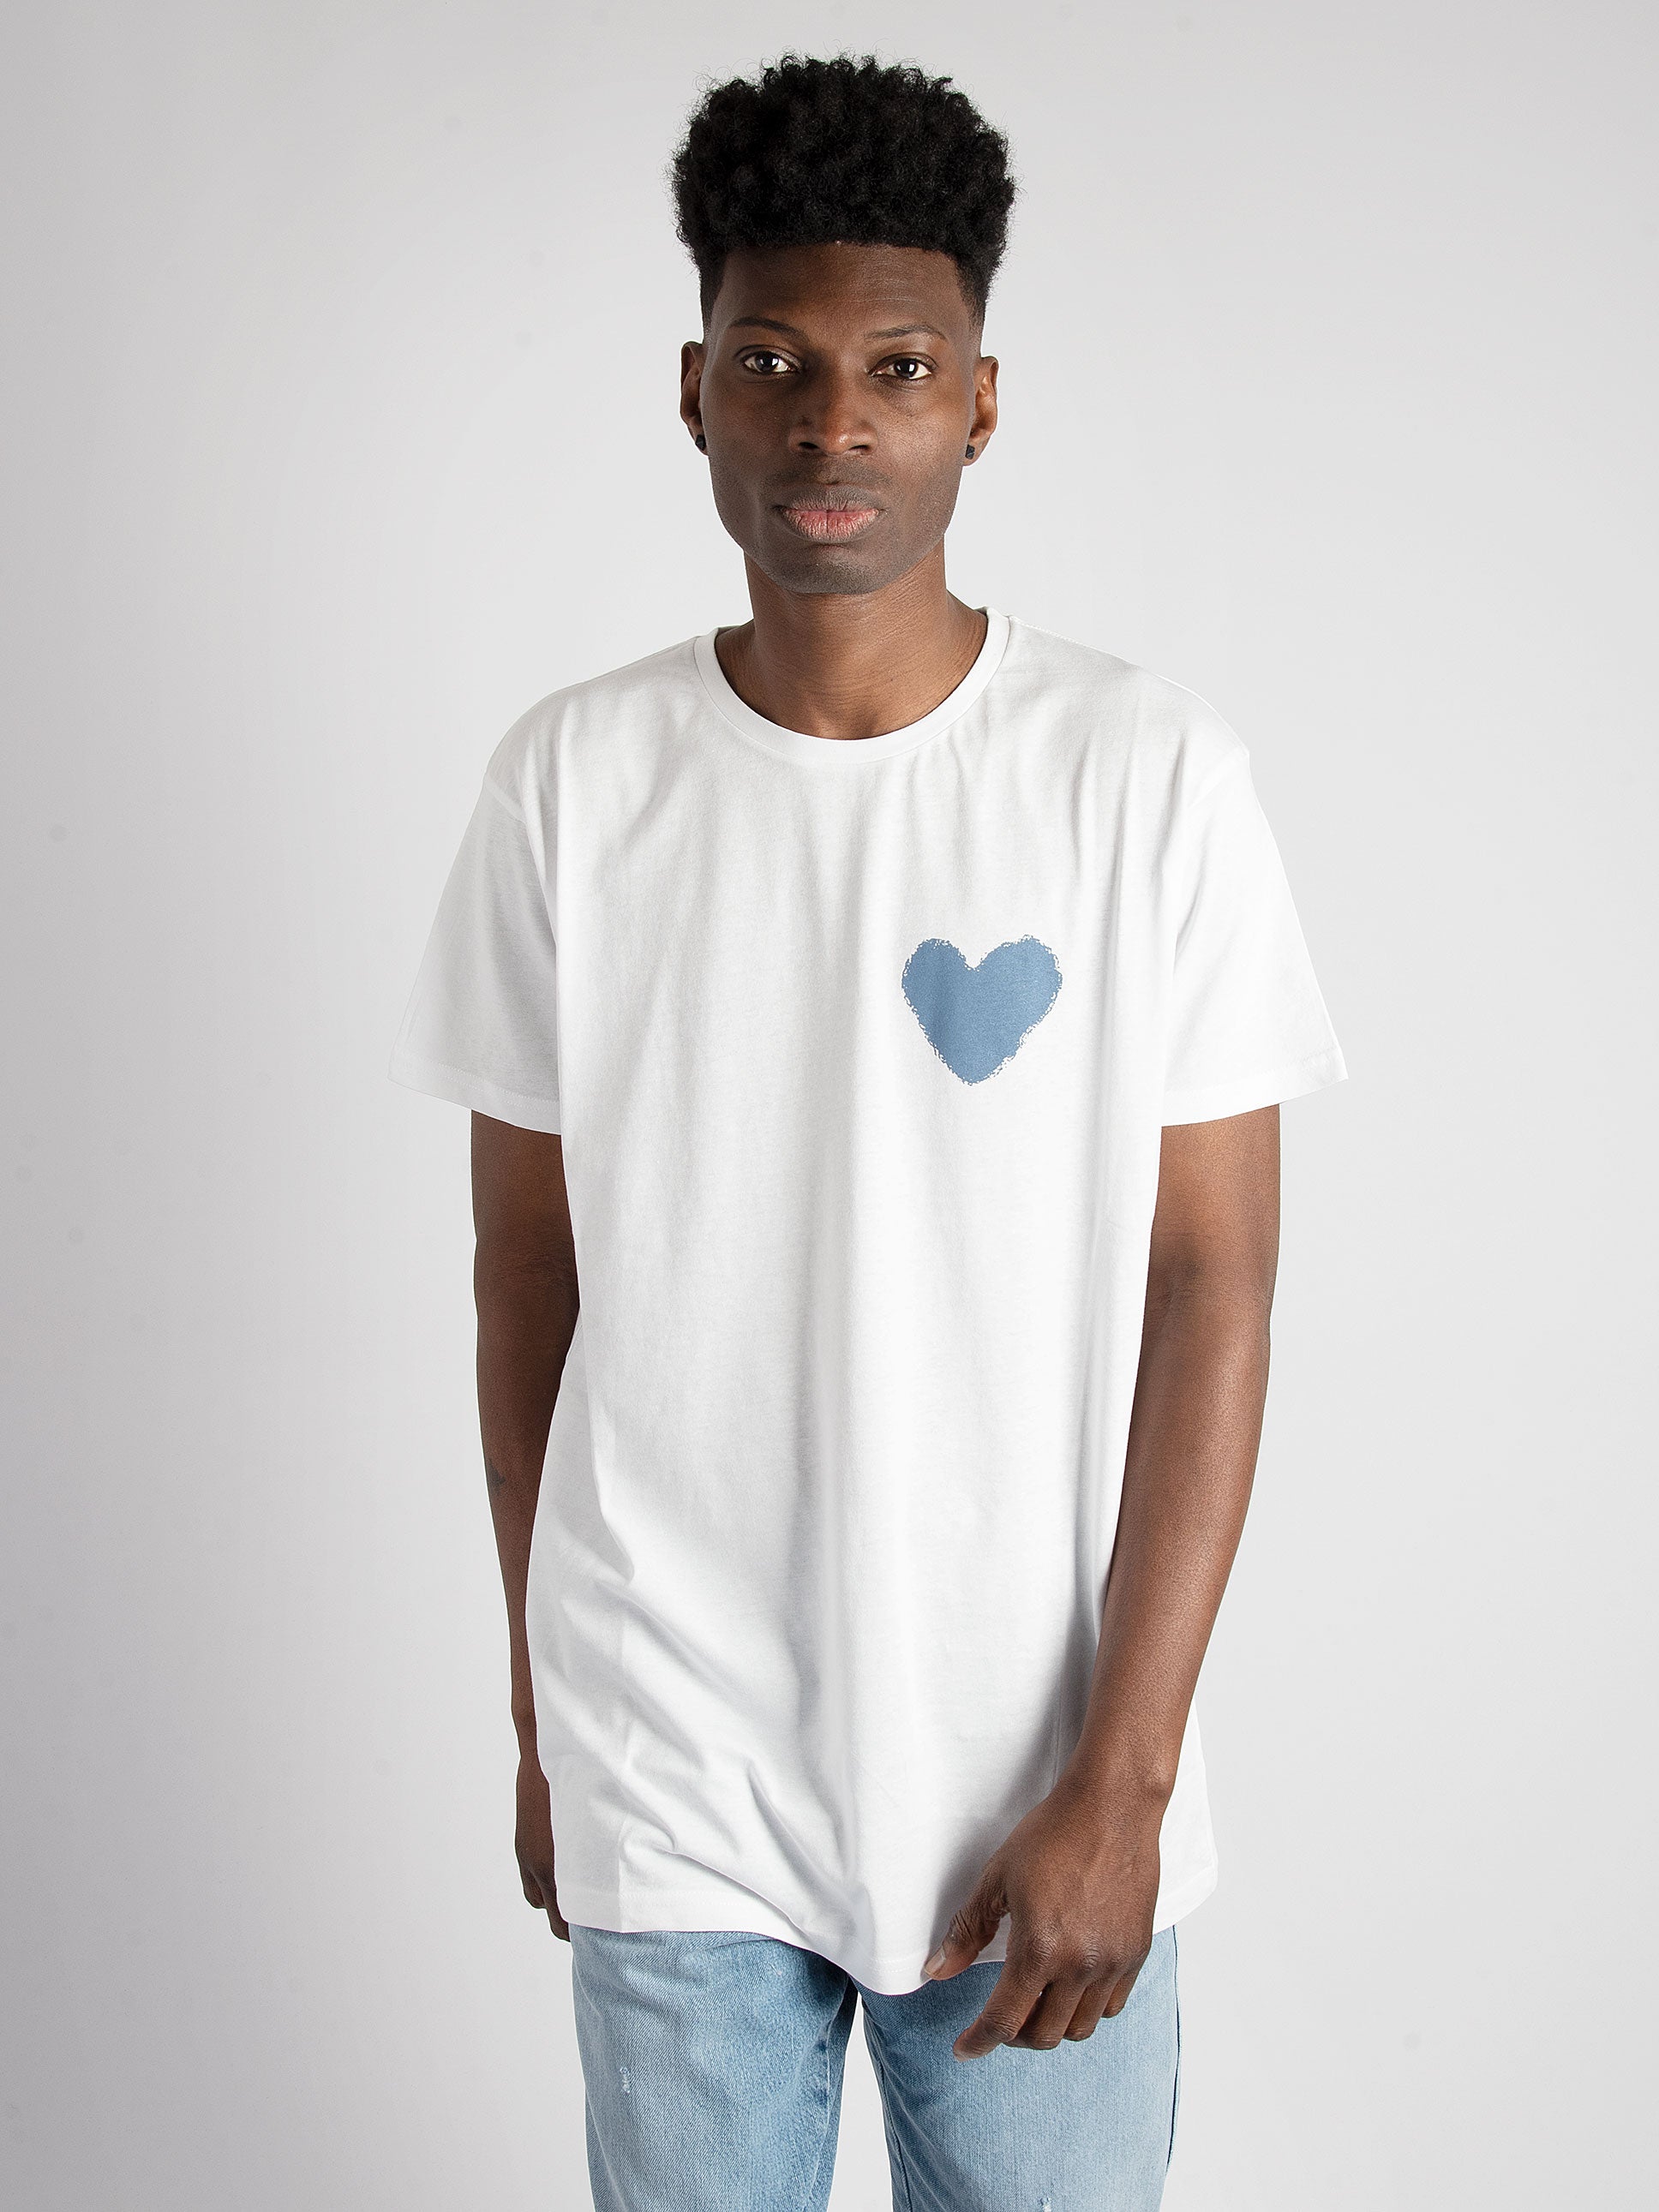 T-Shirt Inspire Heart - Bianco/Blu